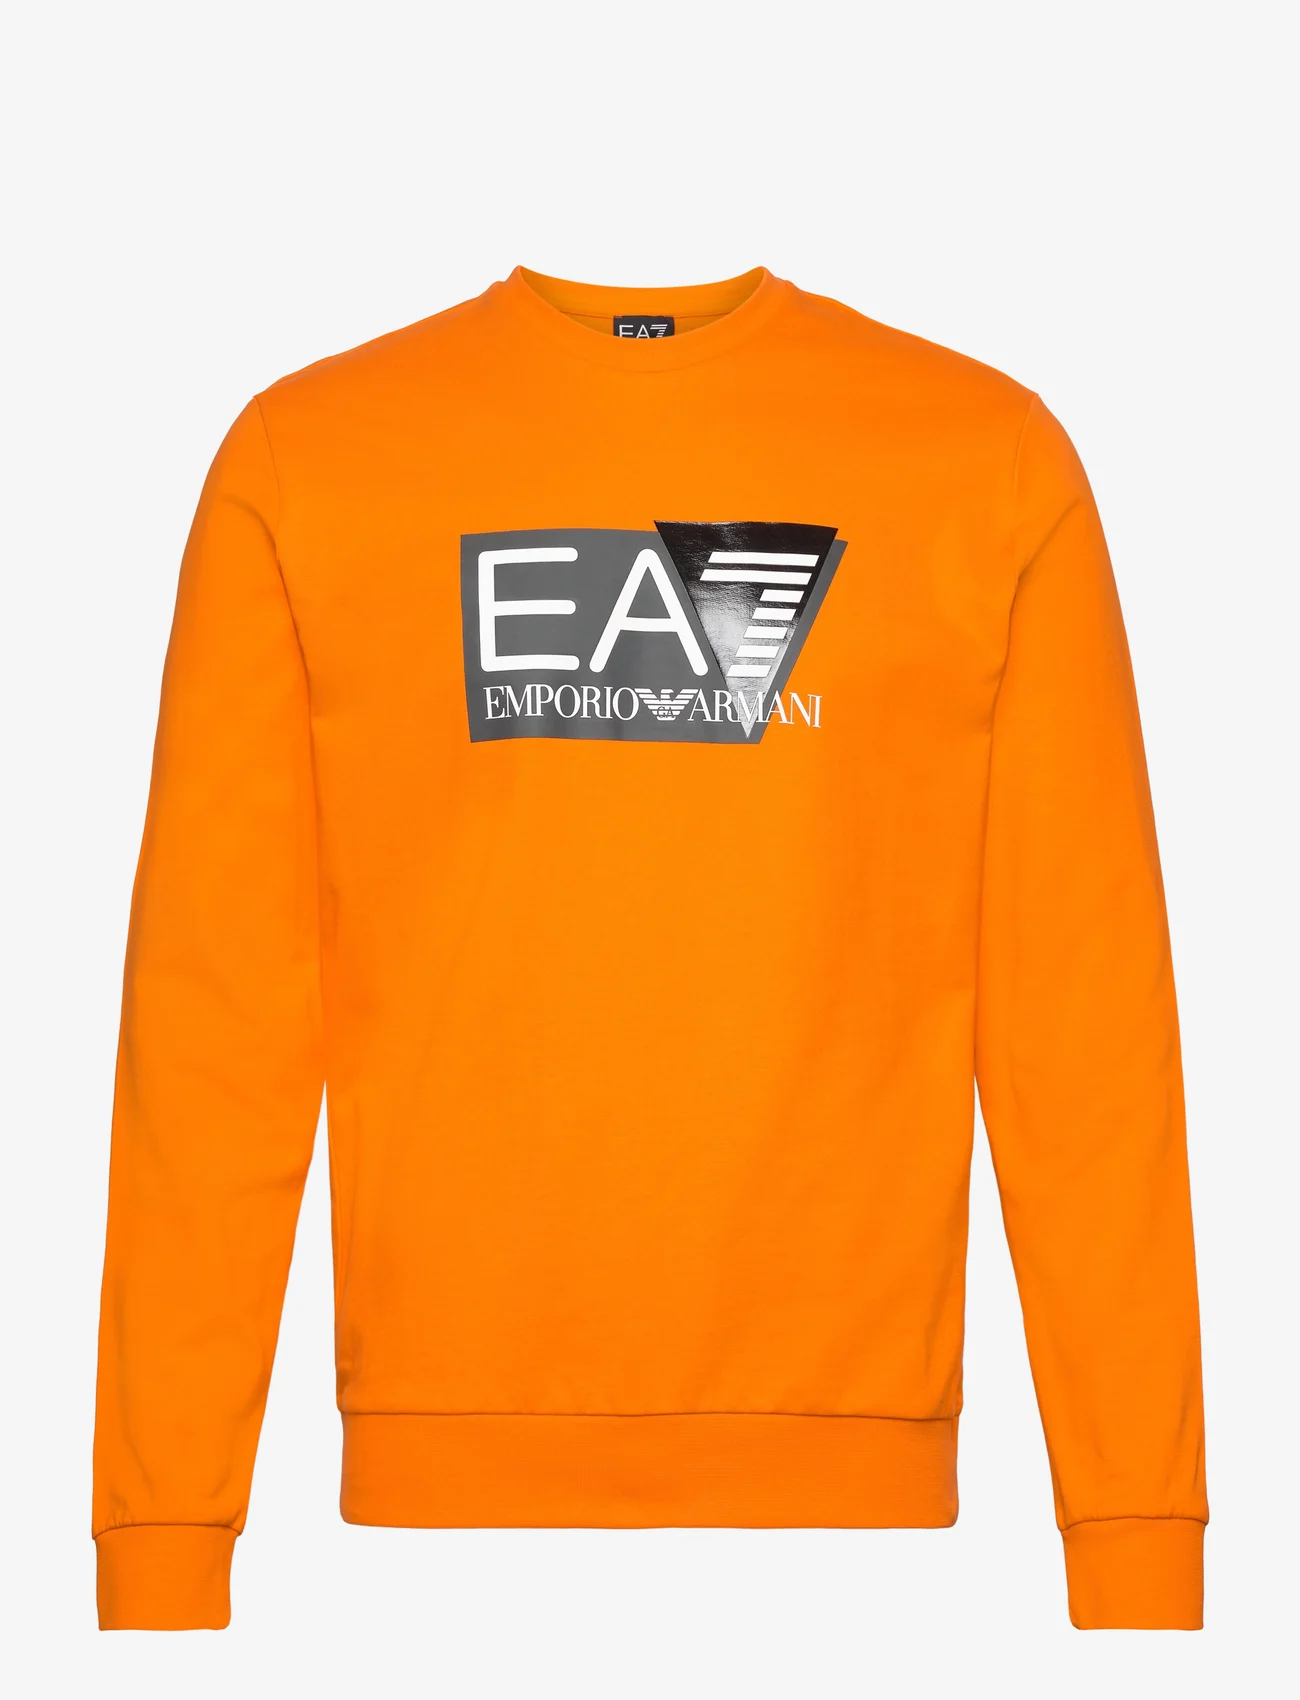 EA7 - SWEATSHIRTS - mænd - orange tiger - 0